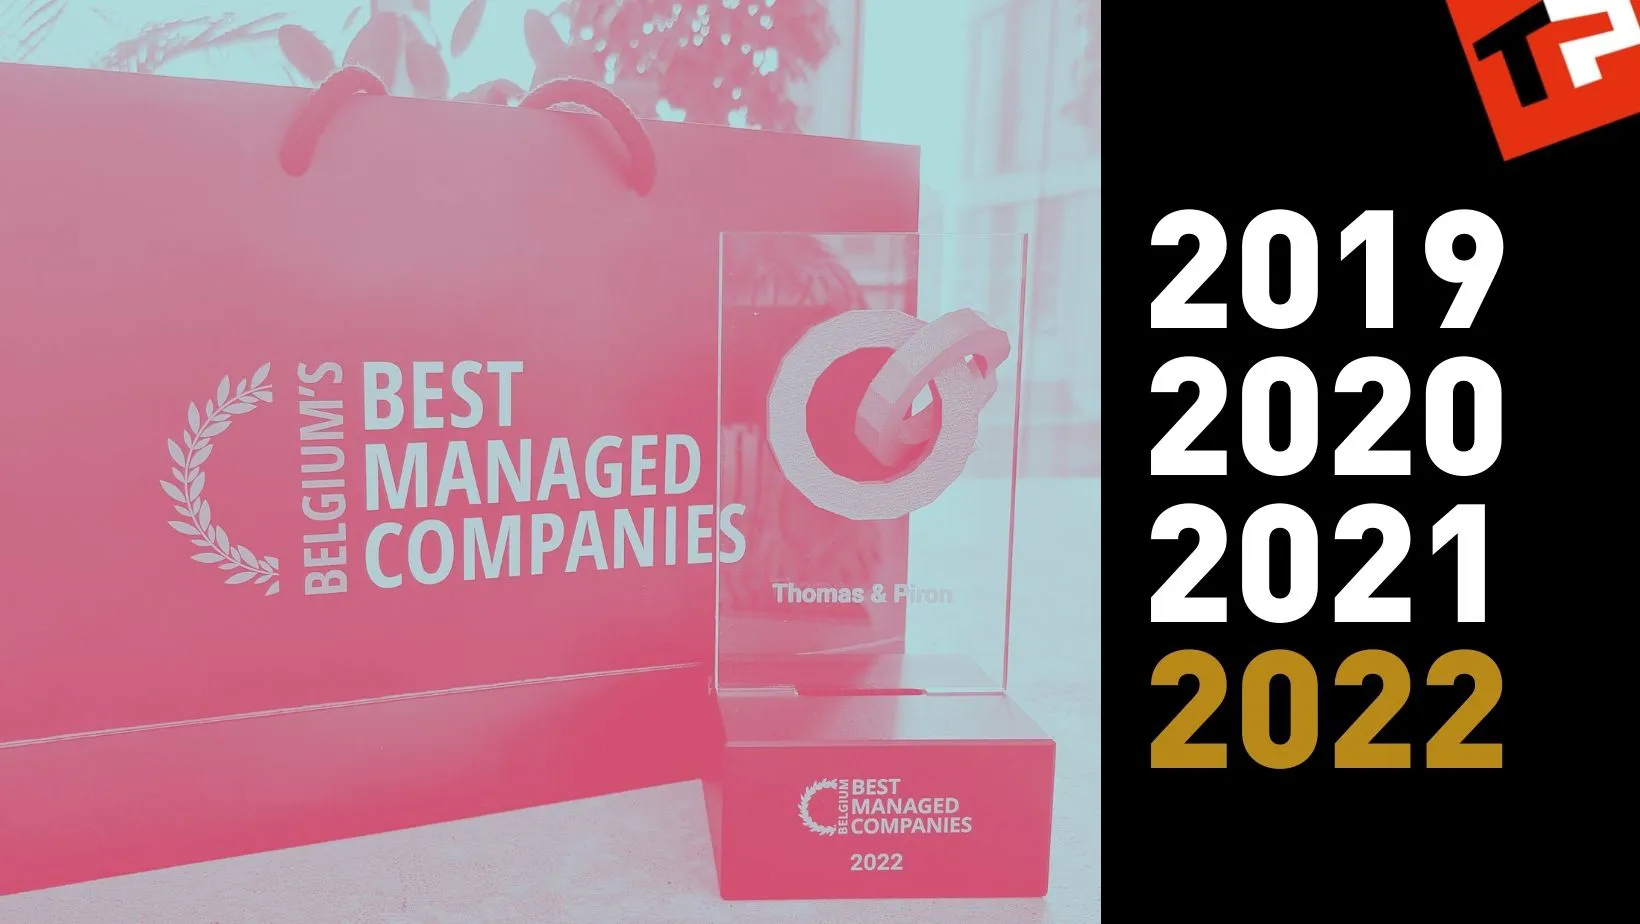 Thomas & Piron obtient le label “Best Managed Companies” en 2022 pour la quatrième année consécutive, cette fois dans sa version GOLD ! 